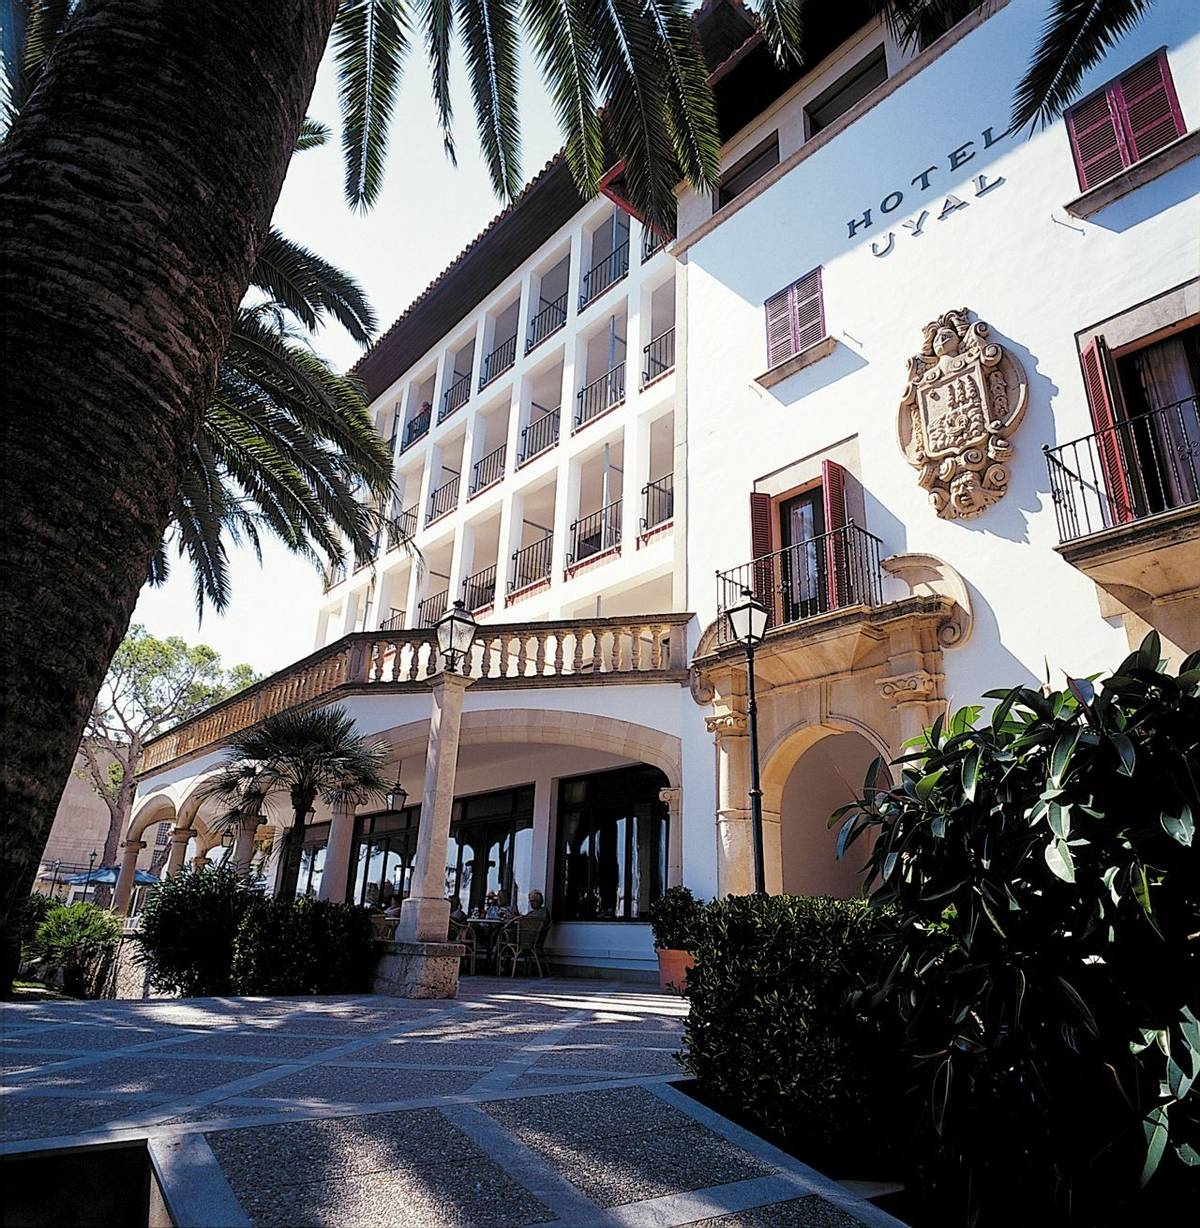 Spain - Mallorca - Hoposa Hotel Uyal - Main front and entrance view.jpg